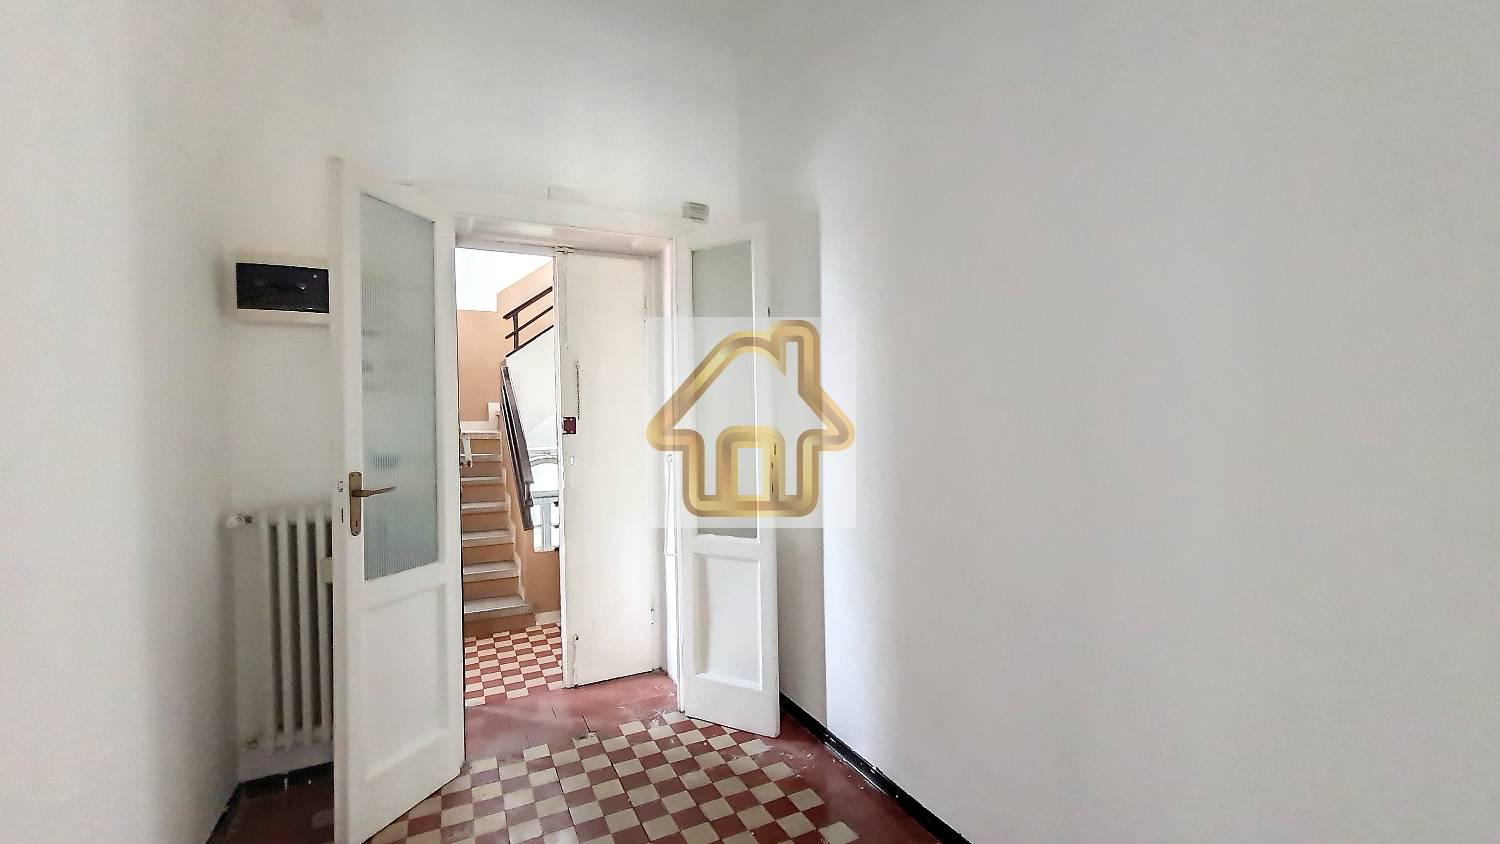 Appartamento in affitto a Rho, 2 locali, prezzo € 800 | CambioCasa.it